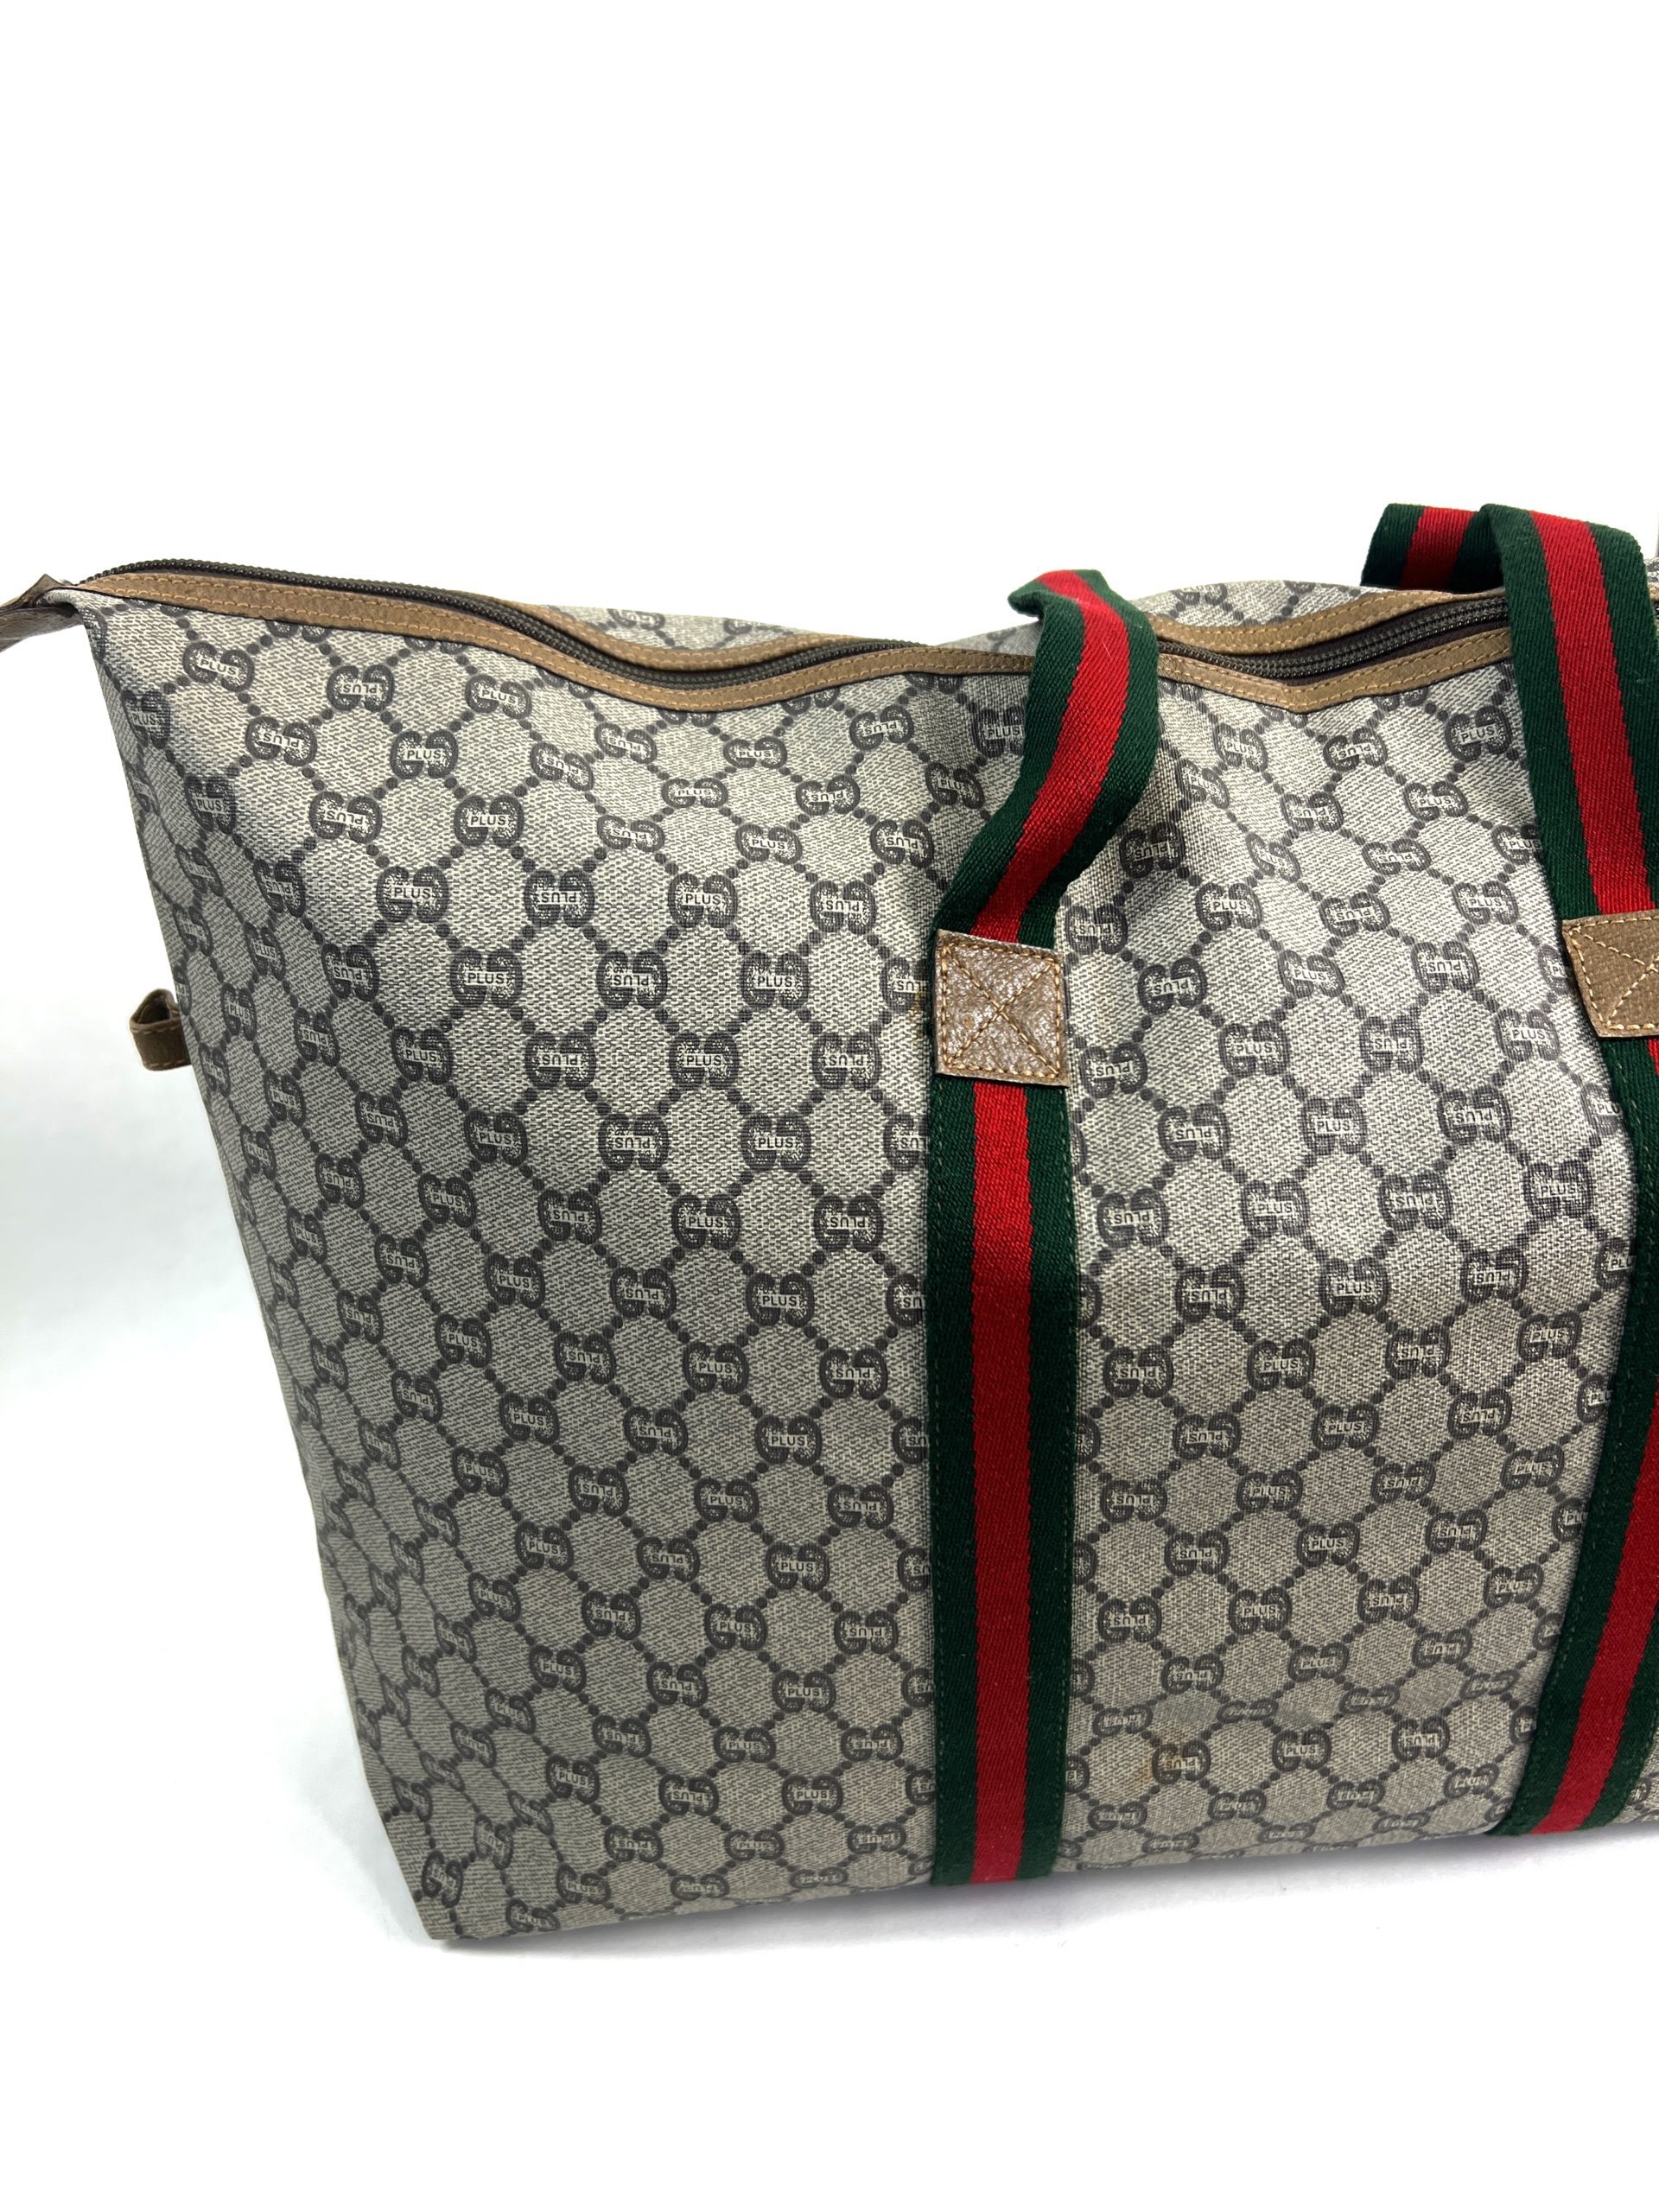 Gucci Monogram Canvas Vintage Tote Shoulder Bag - A World Of Goods